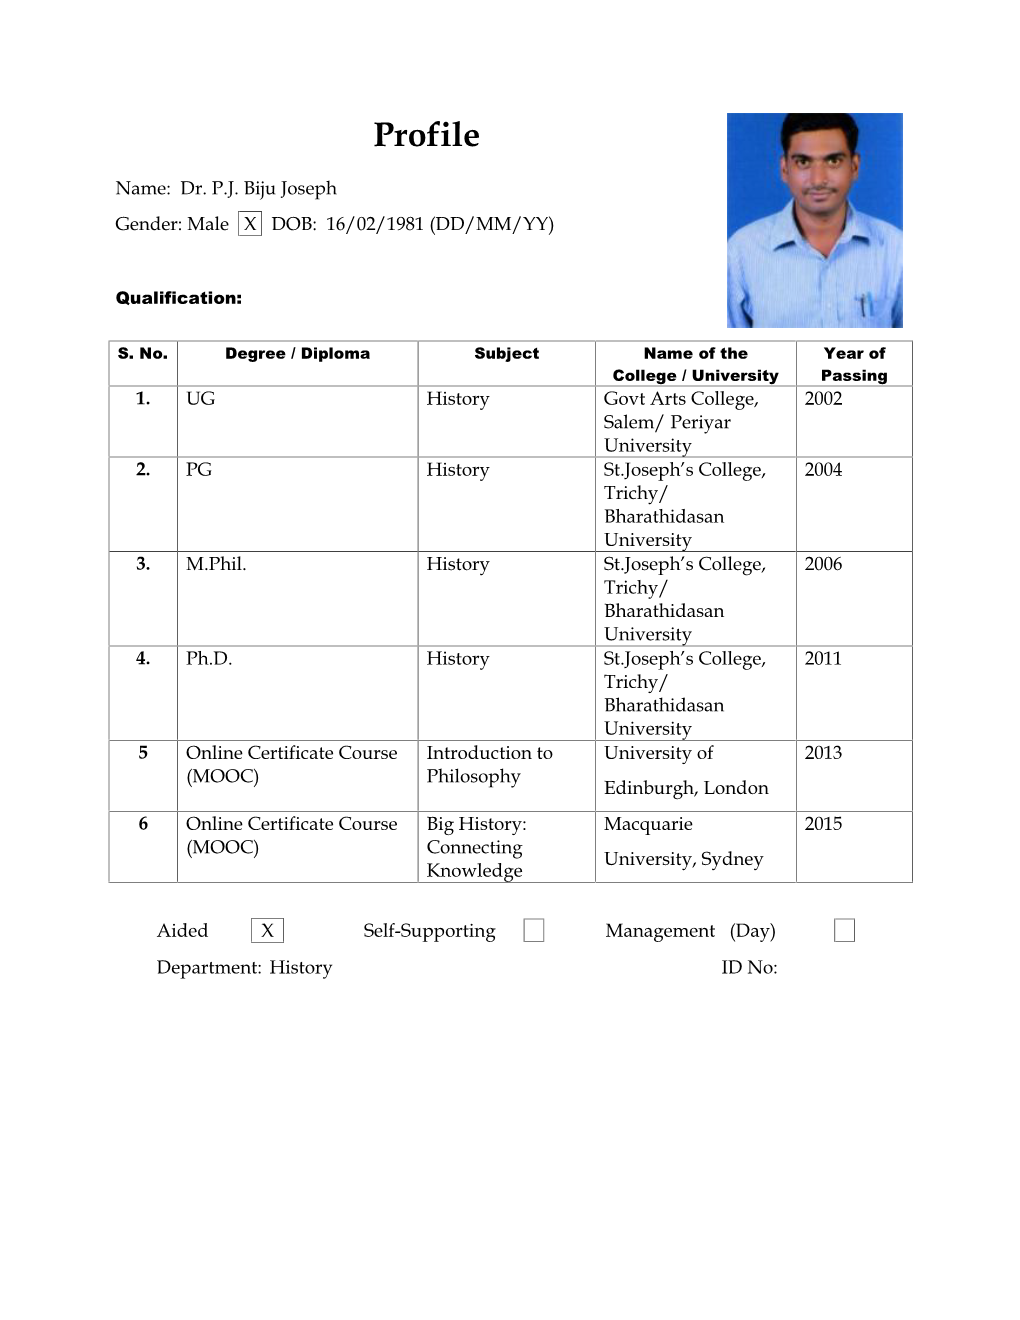 Staff Profile | Dr. P.J. Biju Joseph, Dept. of History